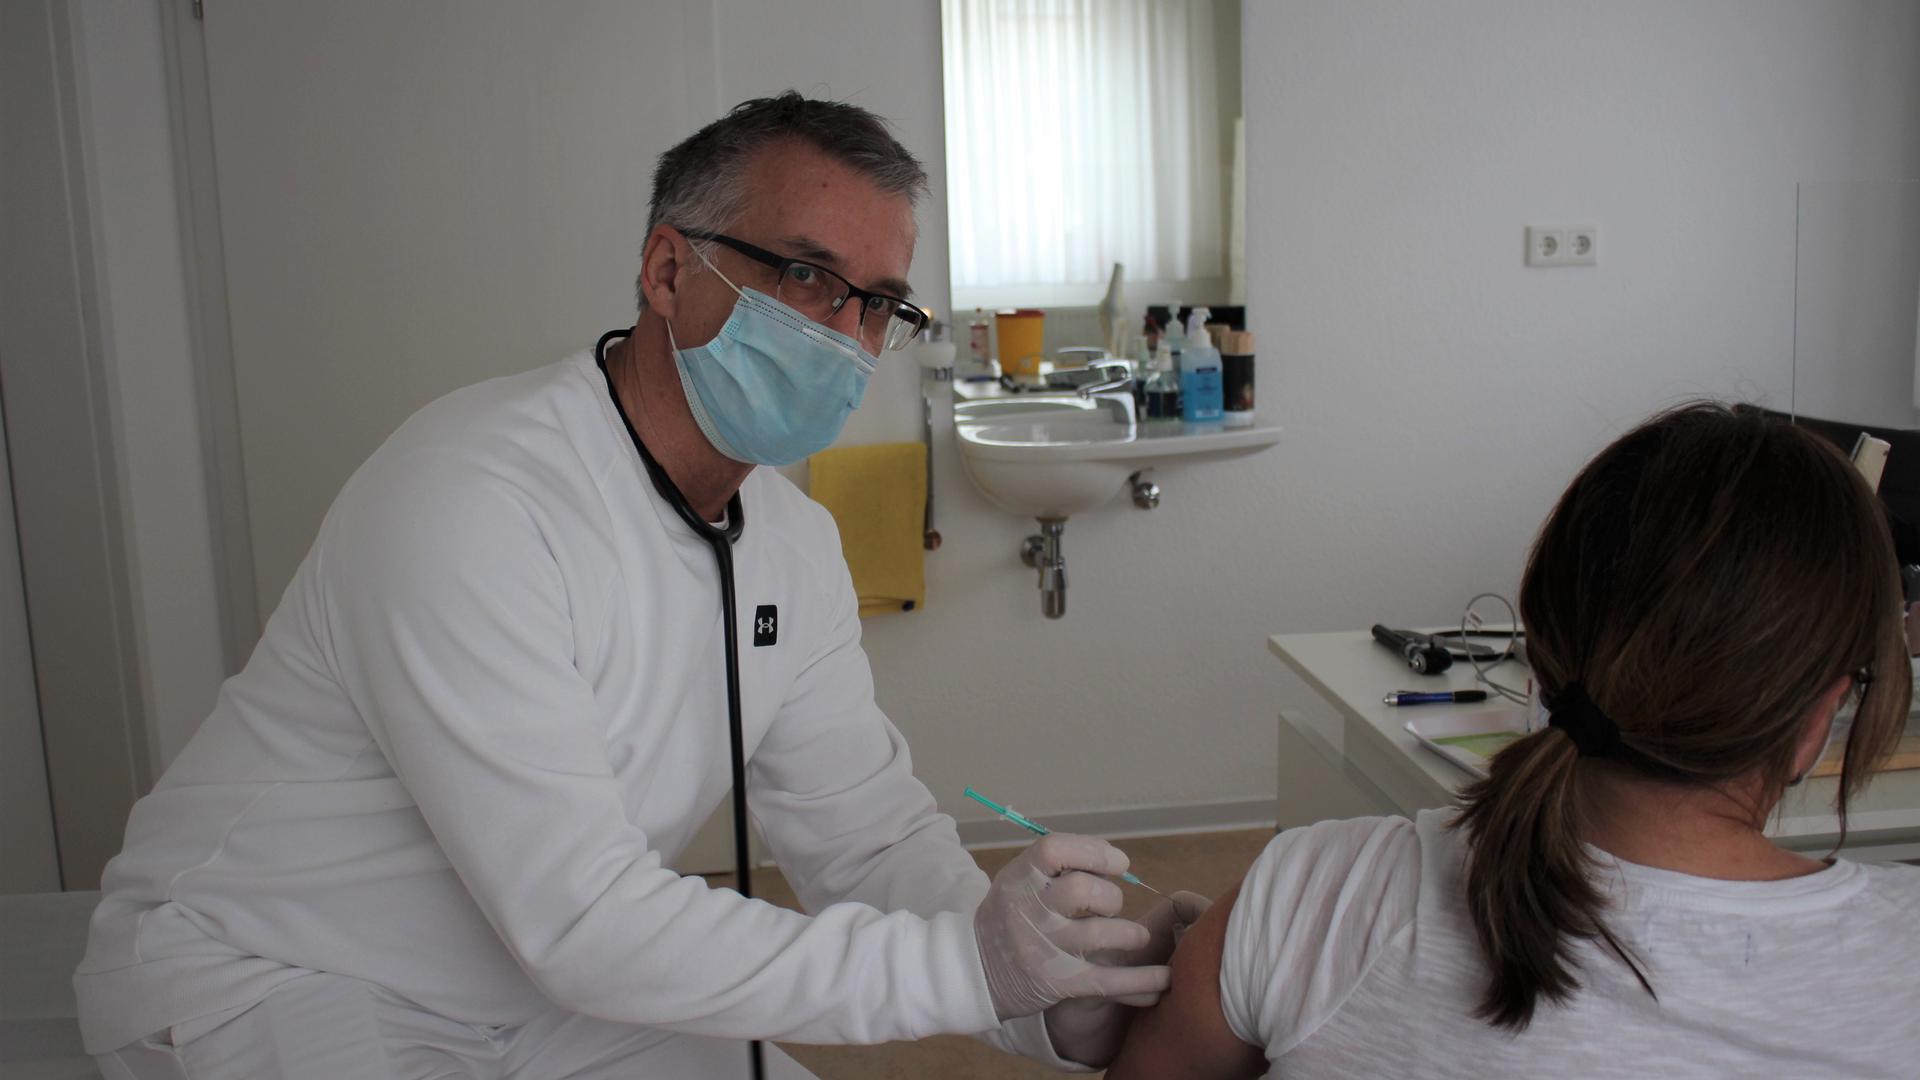 Reinhard Kästner, Hausarzt, Bad Schönborn, bei einer Corona-Impfung